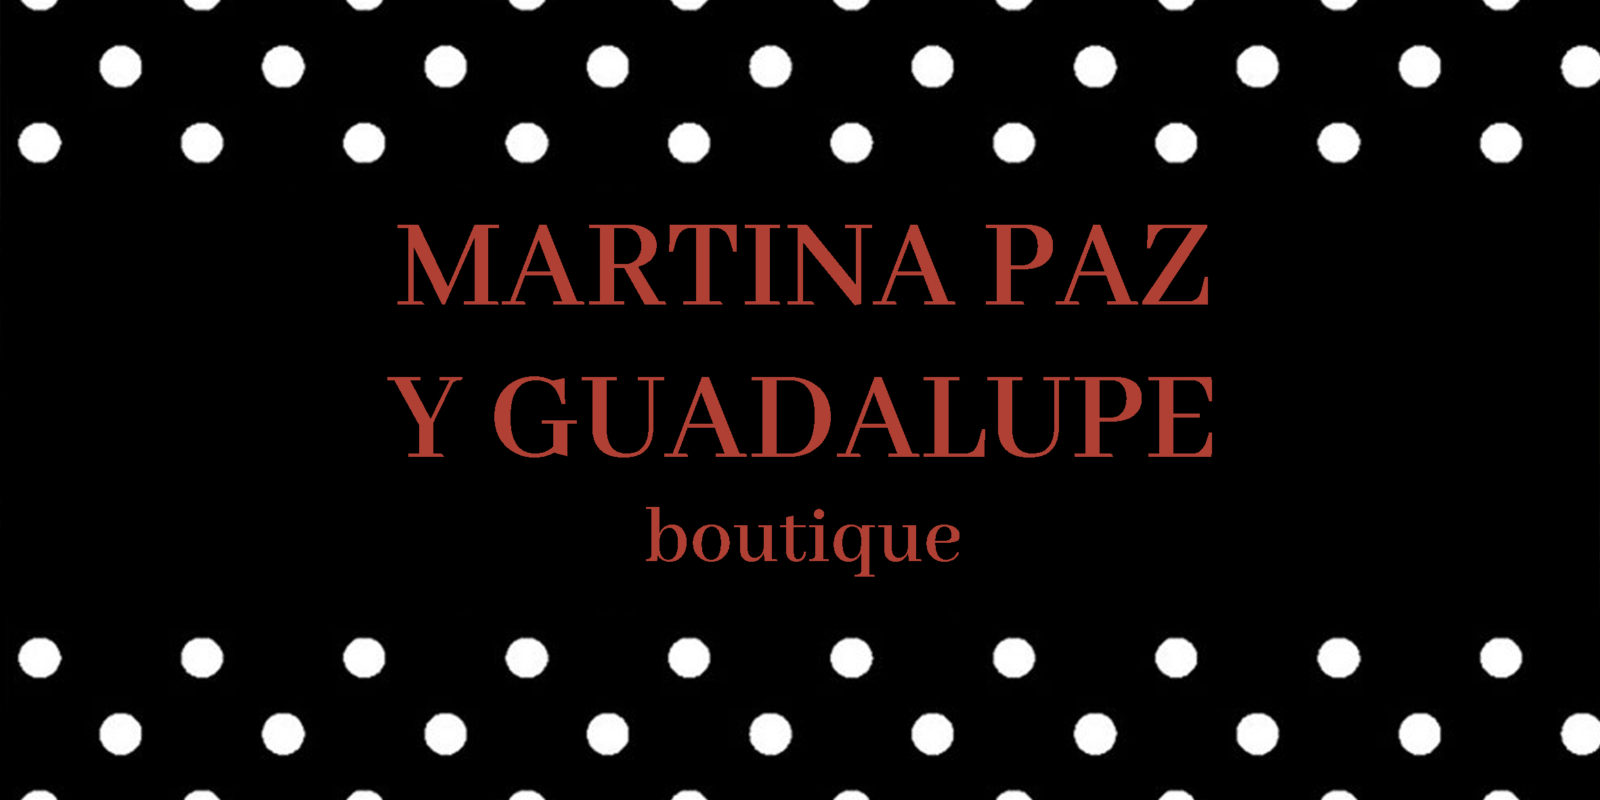 martina paz indumentaria femenina boutique berazategui